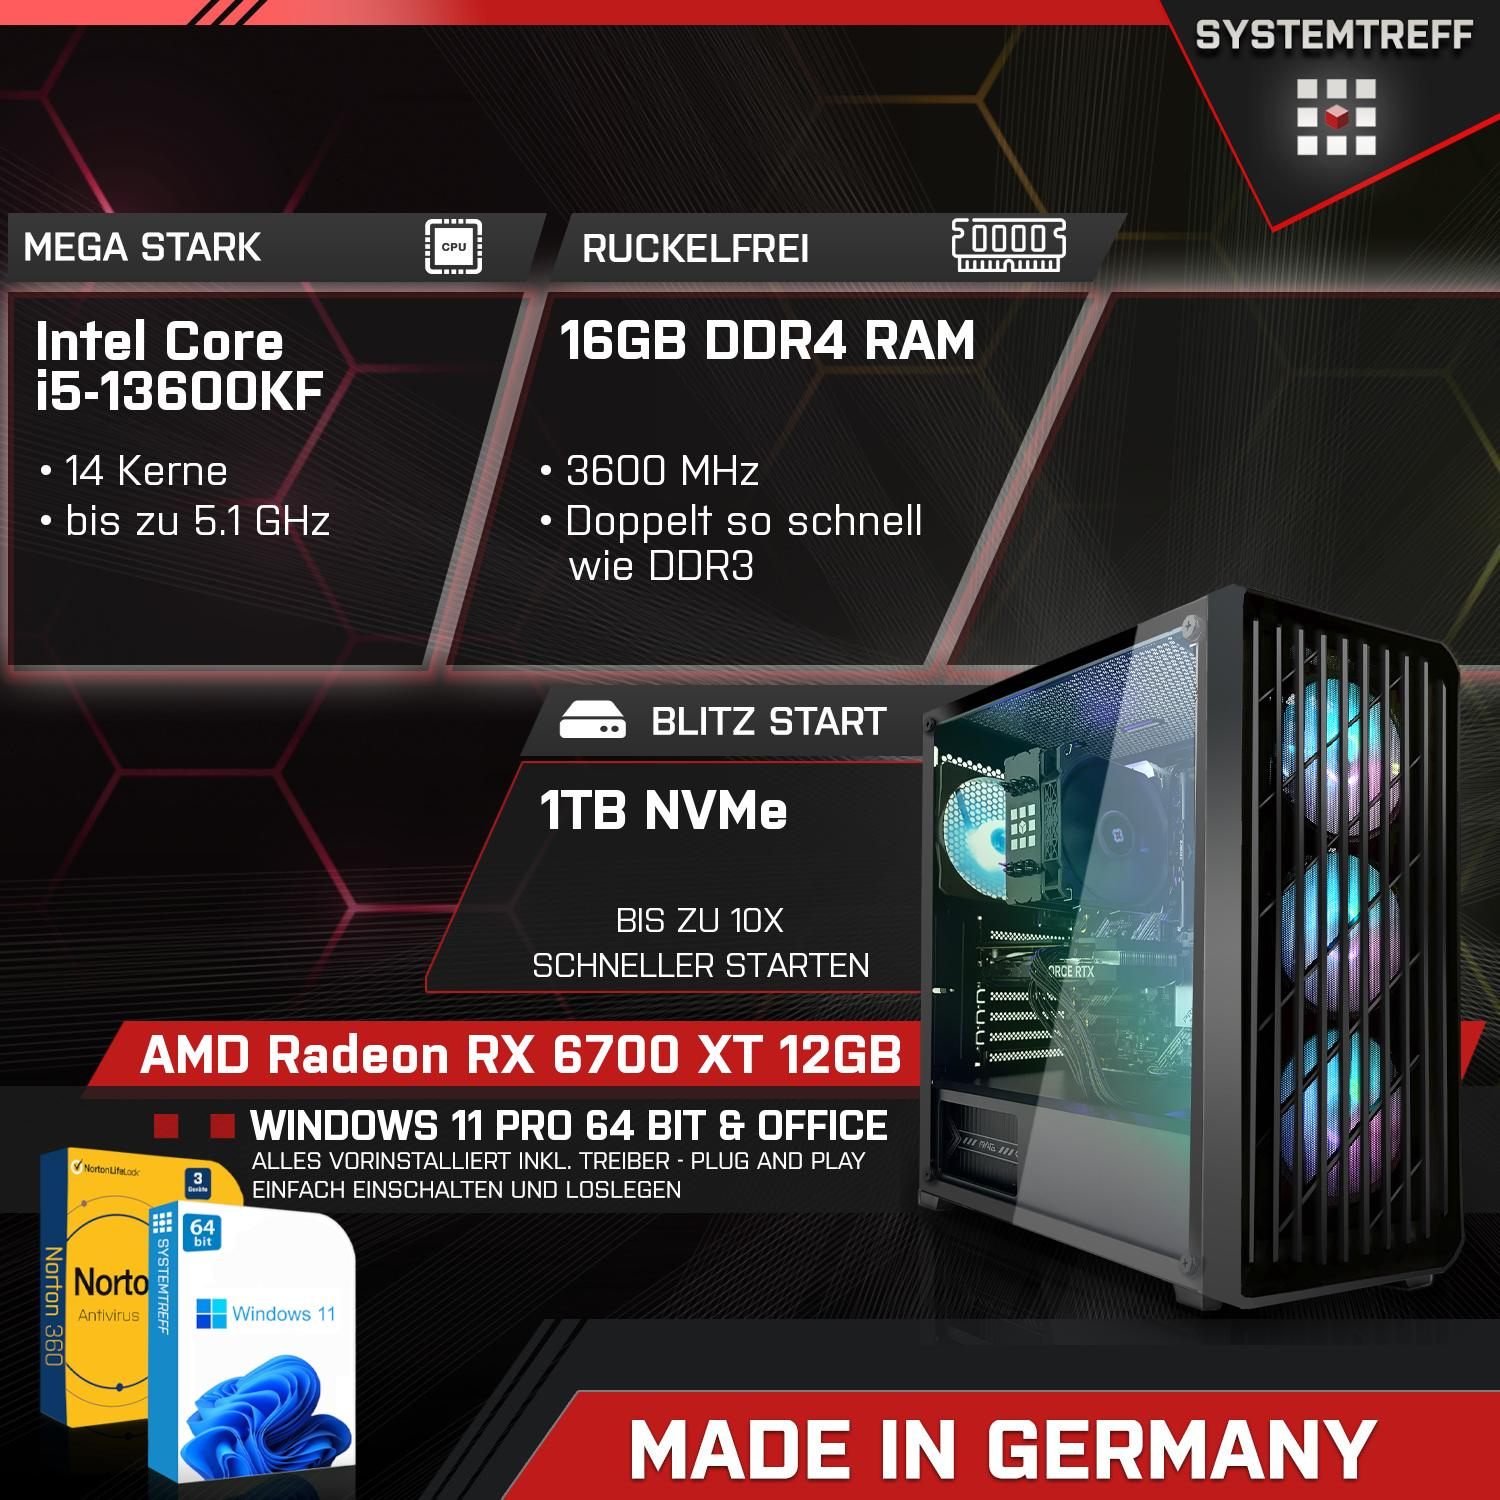 SYSTEMTREFF Komplett mit 1000 Gaming 12 RAM, GB 12GB Intel i5-13600KF i5-13600KF, GB PC GB 6700 AMD Radeon Prozessor, Komplett RX GDDR6, XT Core mSSD, 16